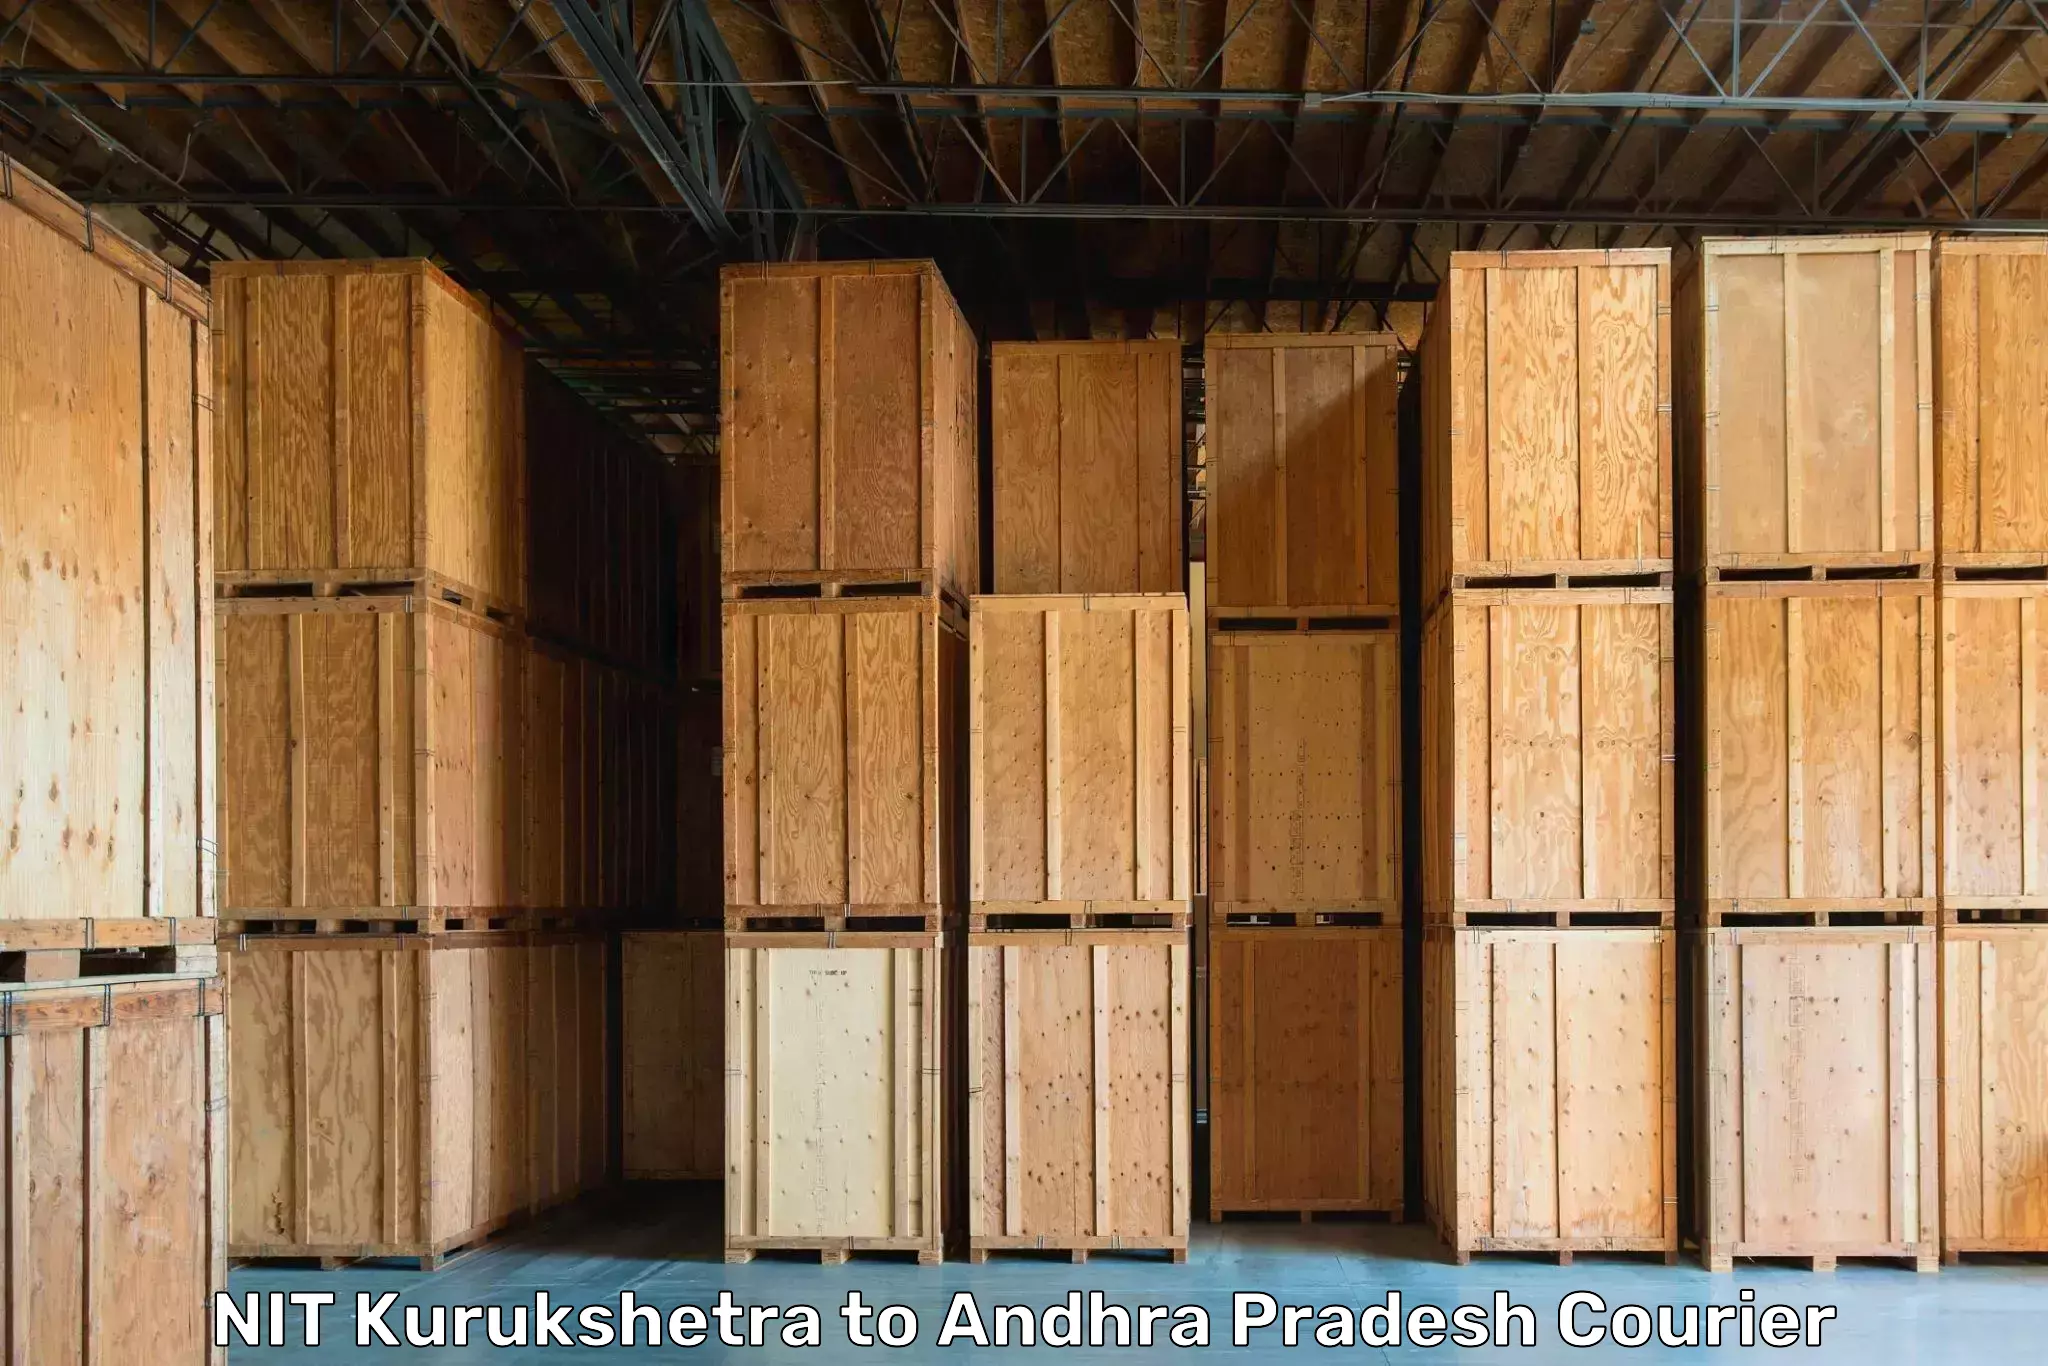 Moving and storage services NIT Kurukshetra to Kanigiri